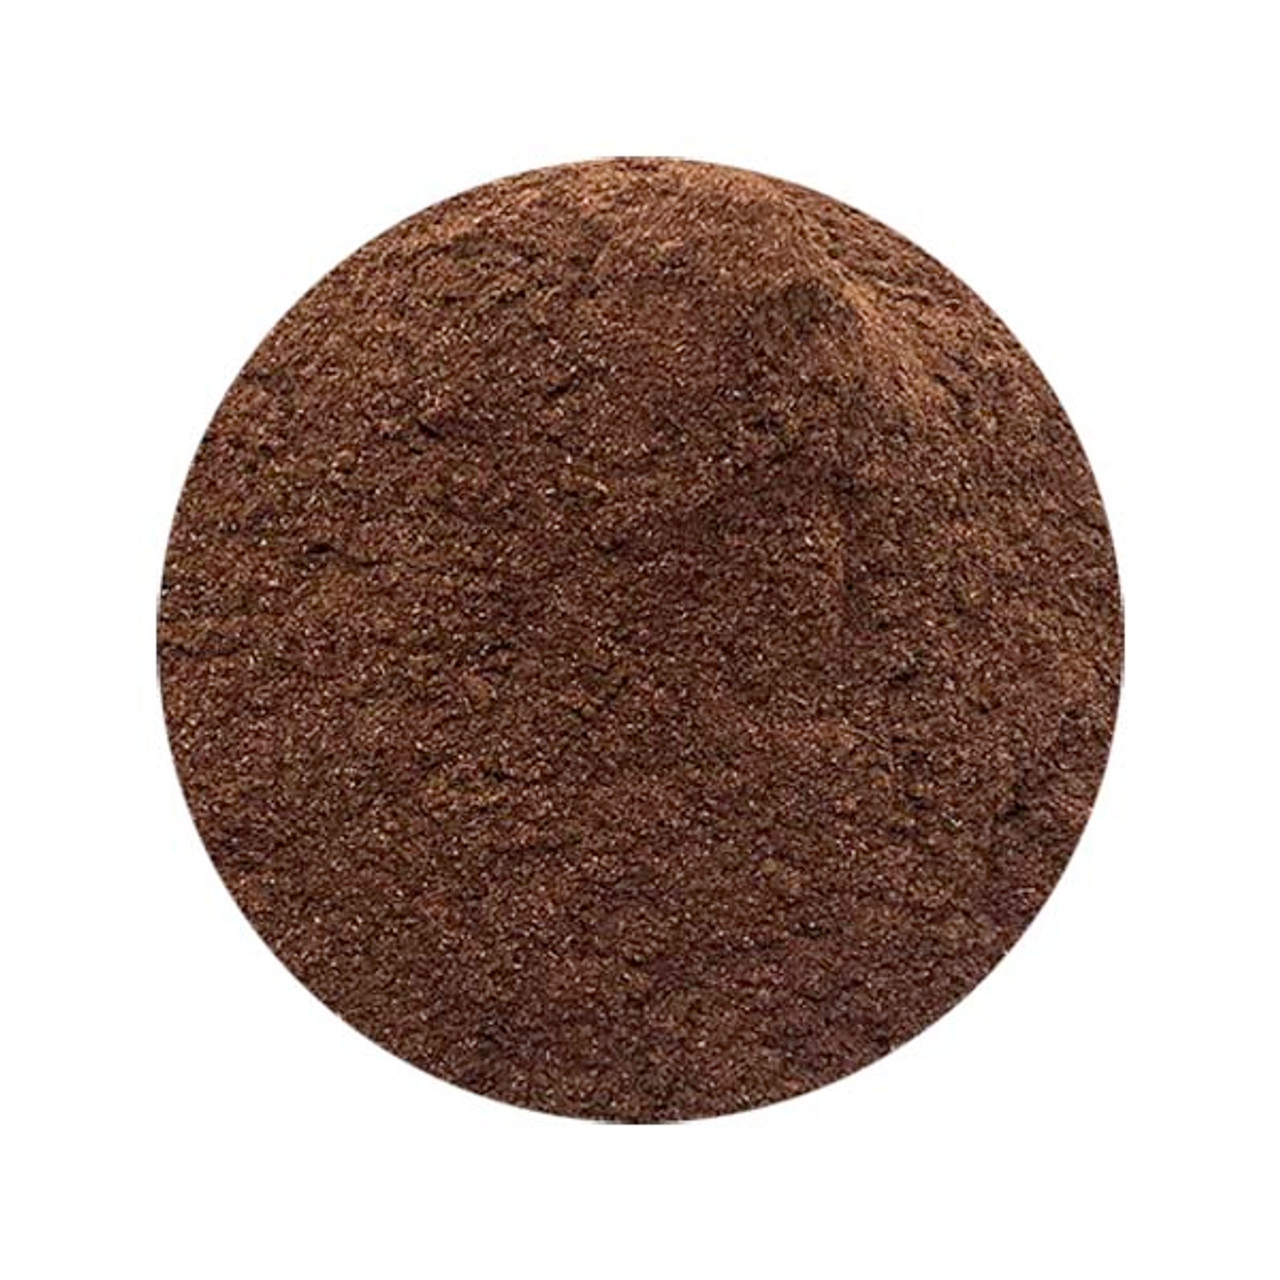 Alkanet root powder : purple dye